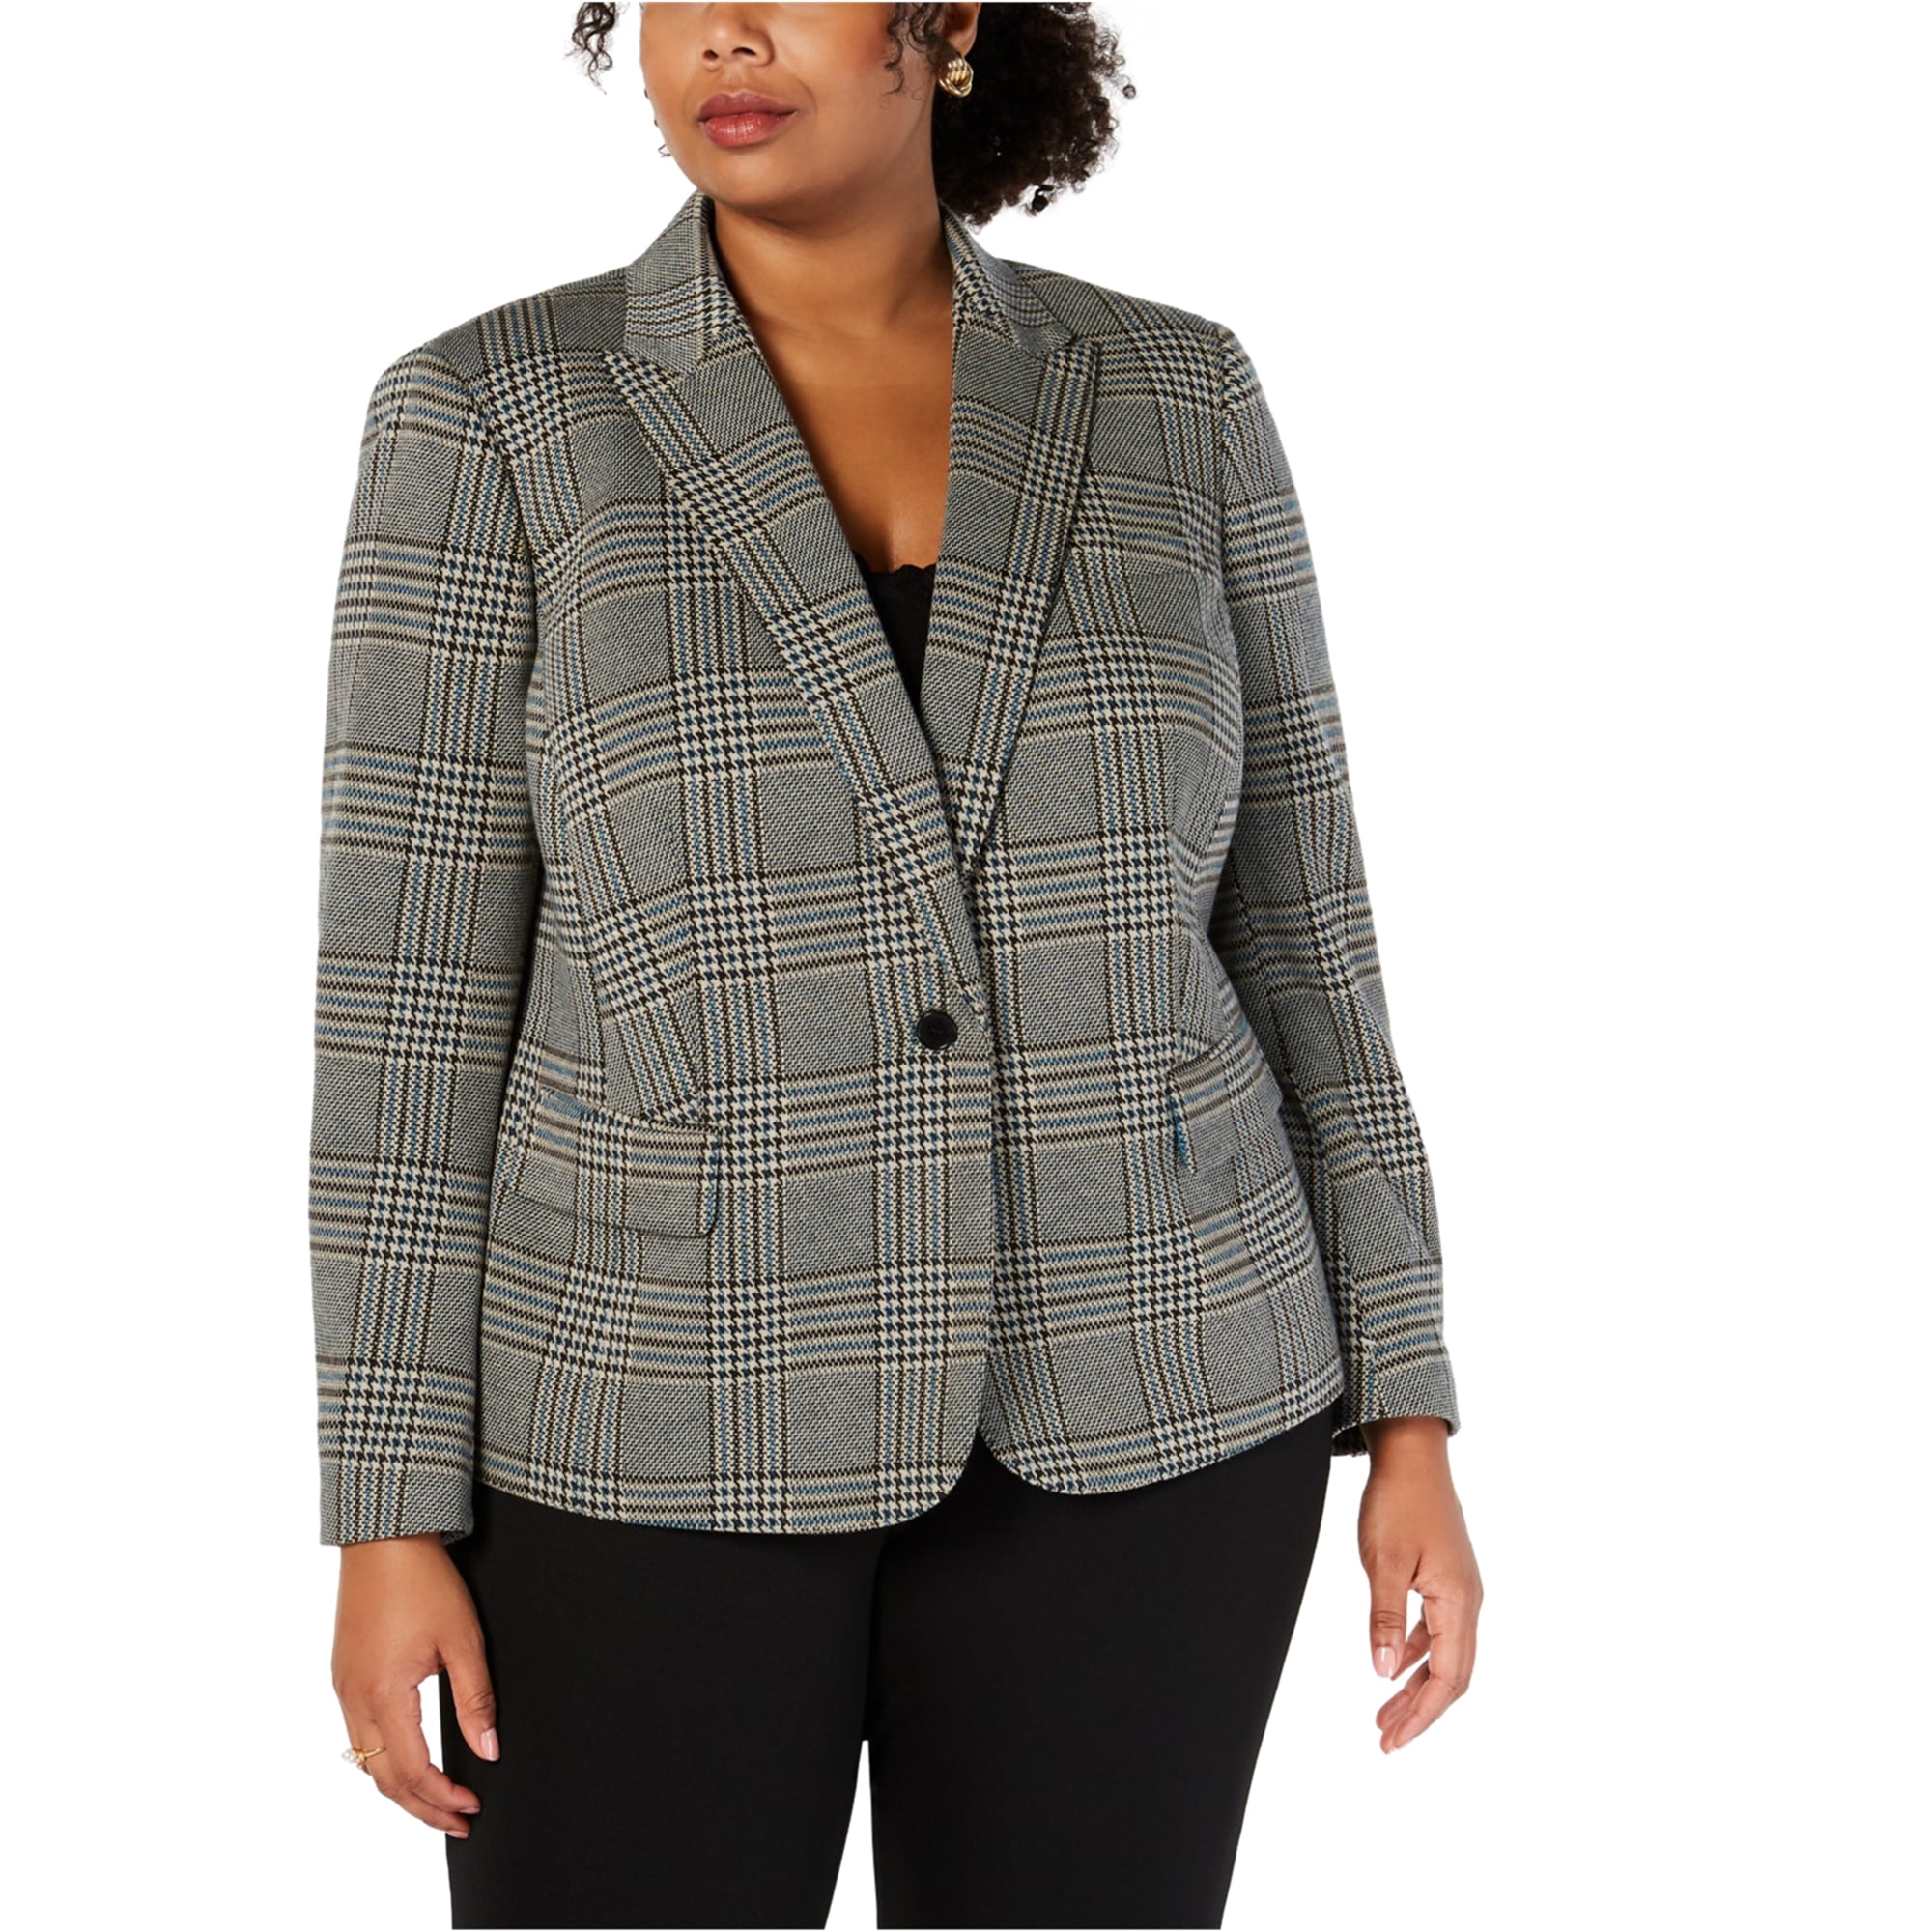 Finity Womens Topstitched Two Button Blazer Jacket, Black, 8 - Walmart.com